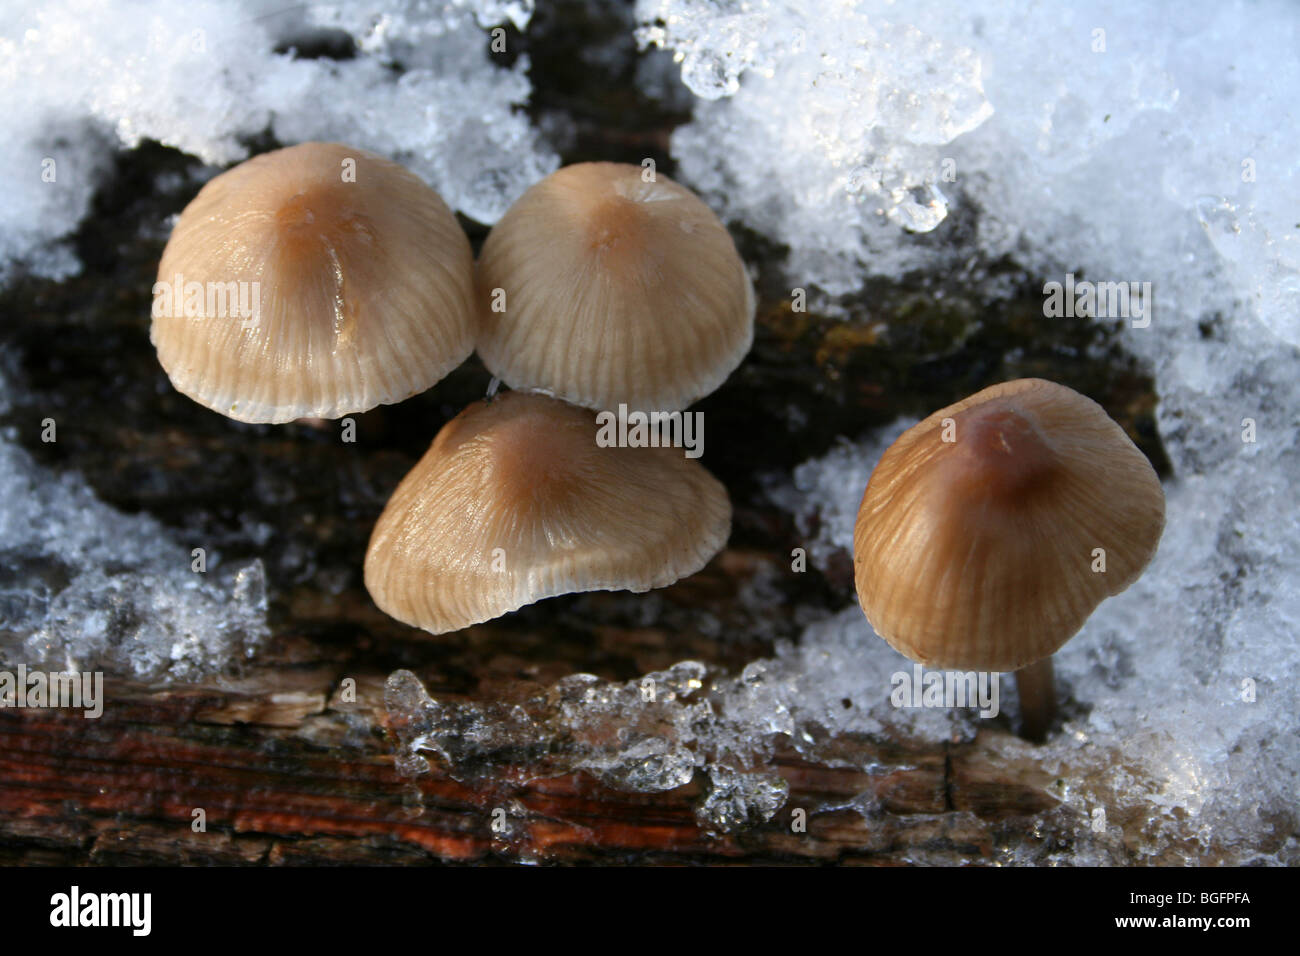 Coprinus Pilzarten auf schneebedeckten Baumstamm am Kammern Bauernhof Holz, Lincolnshire, UK Stockfoto